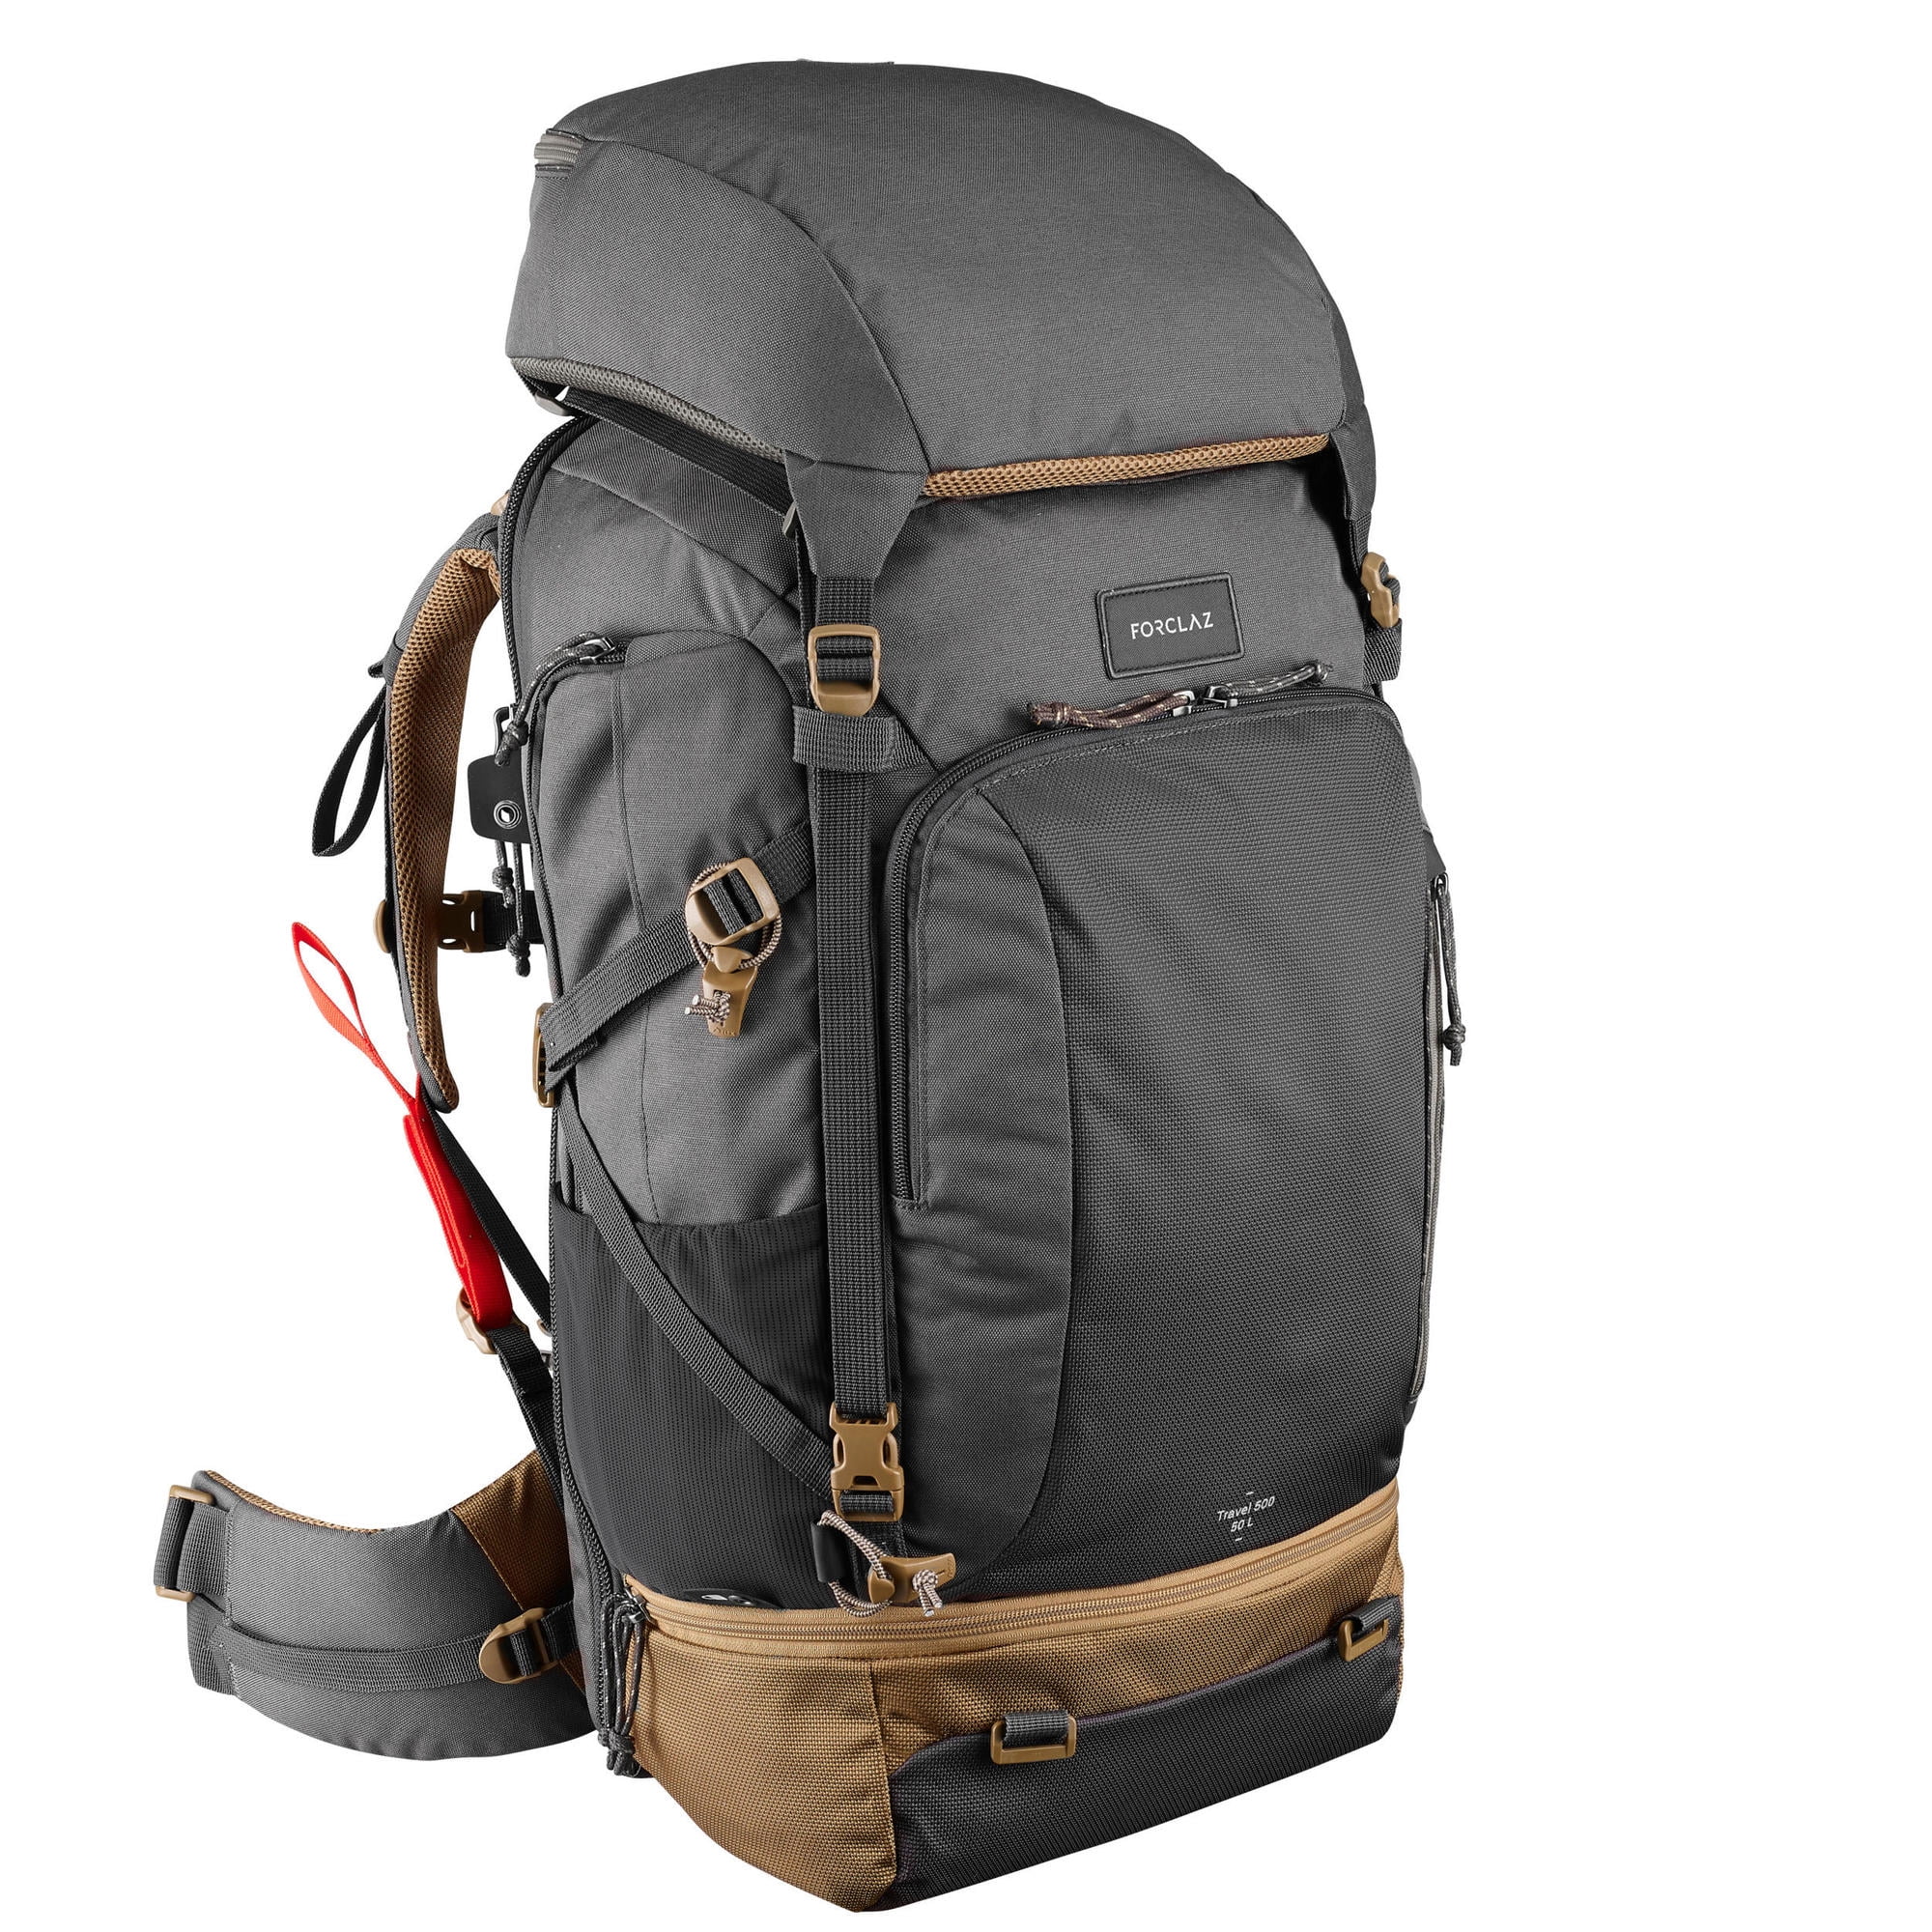 Bedelen stel je voor Zuivelproducten Decathlon Travel 500, 50 L Hiking Backpack, Men's - Walmart.com